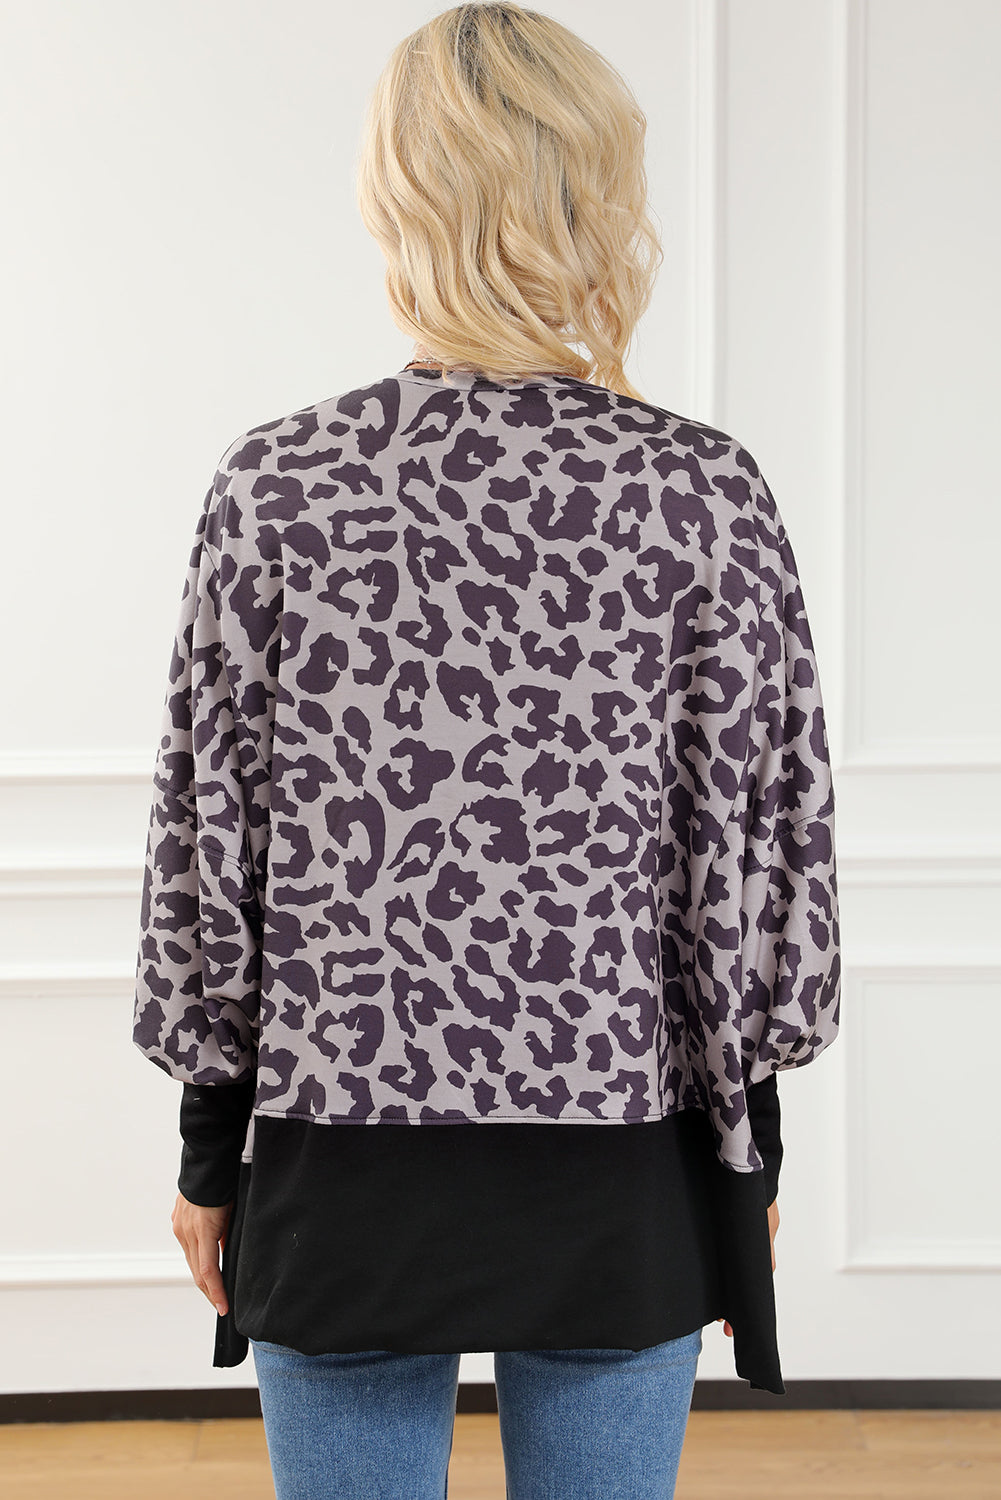 Crni sweatshirt s prorezima s rukavima u stilu patchworka s leopardom